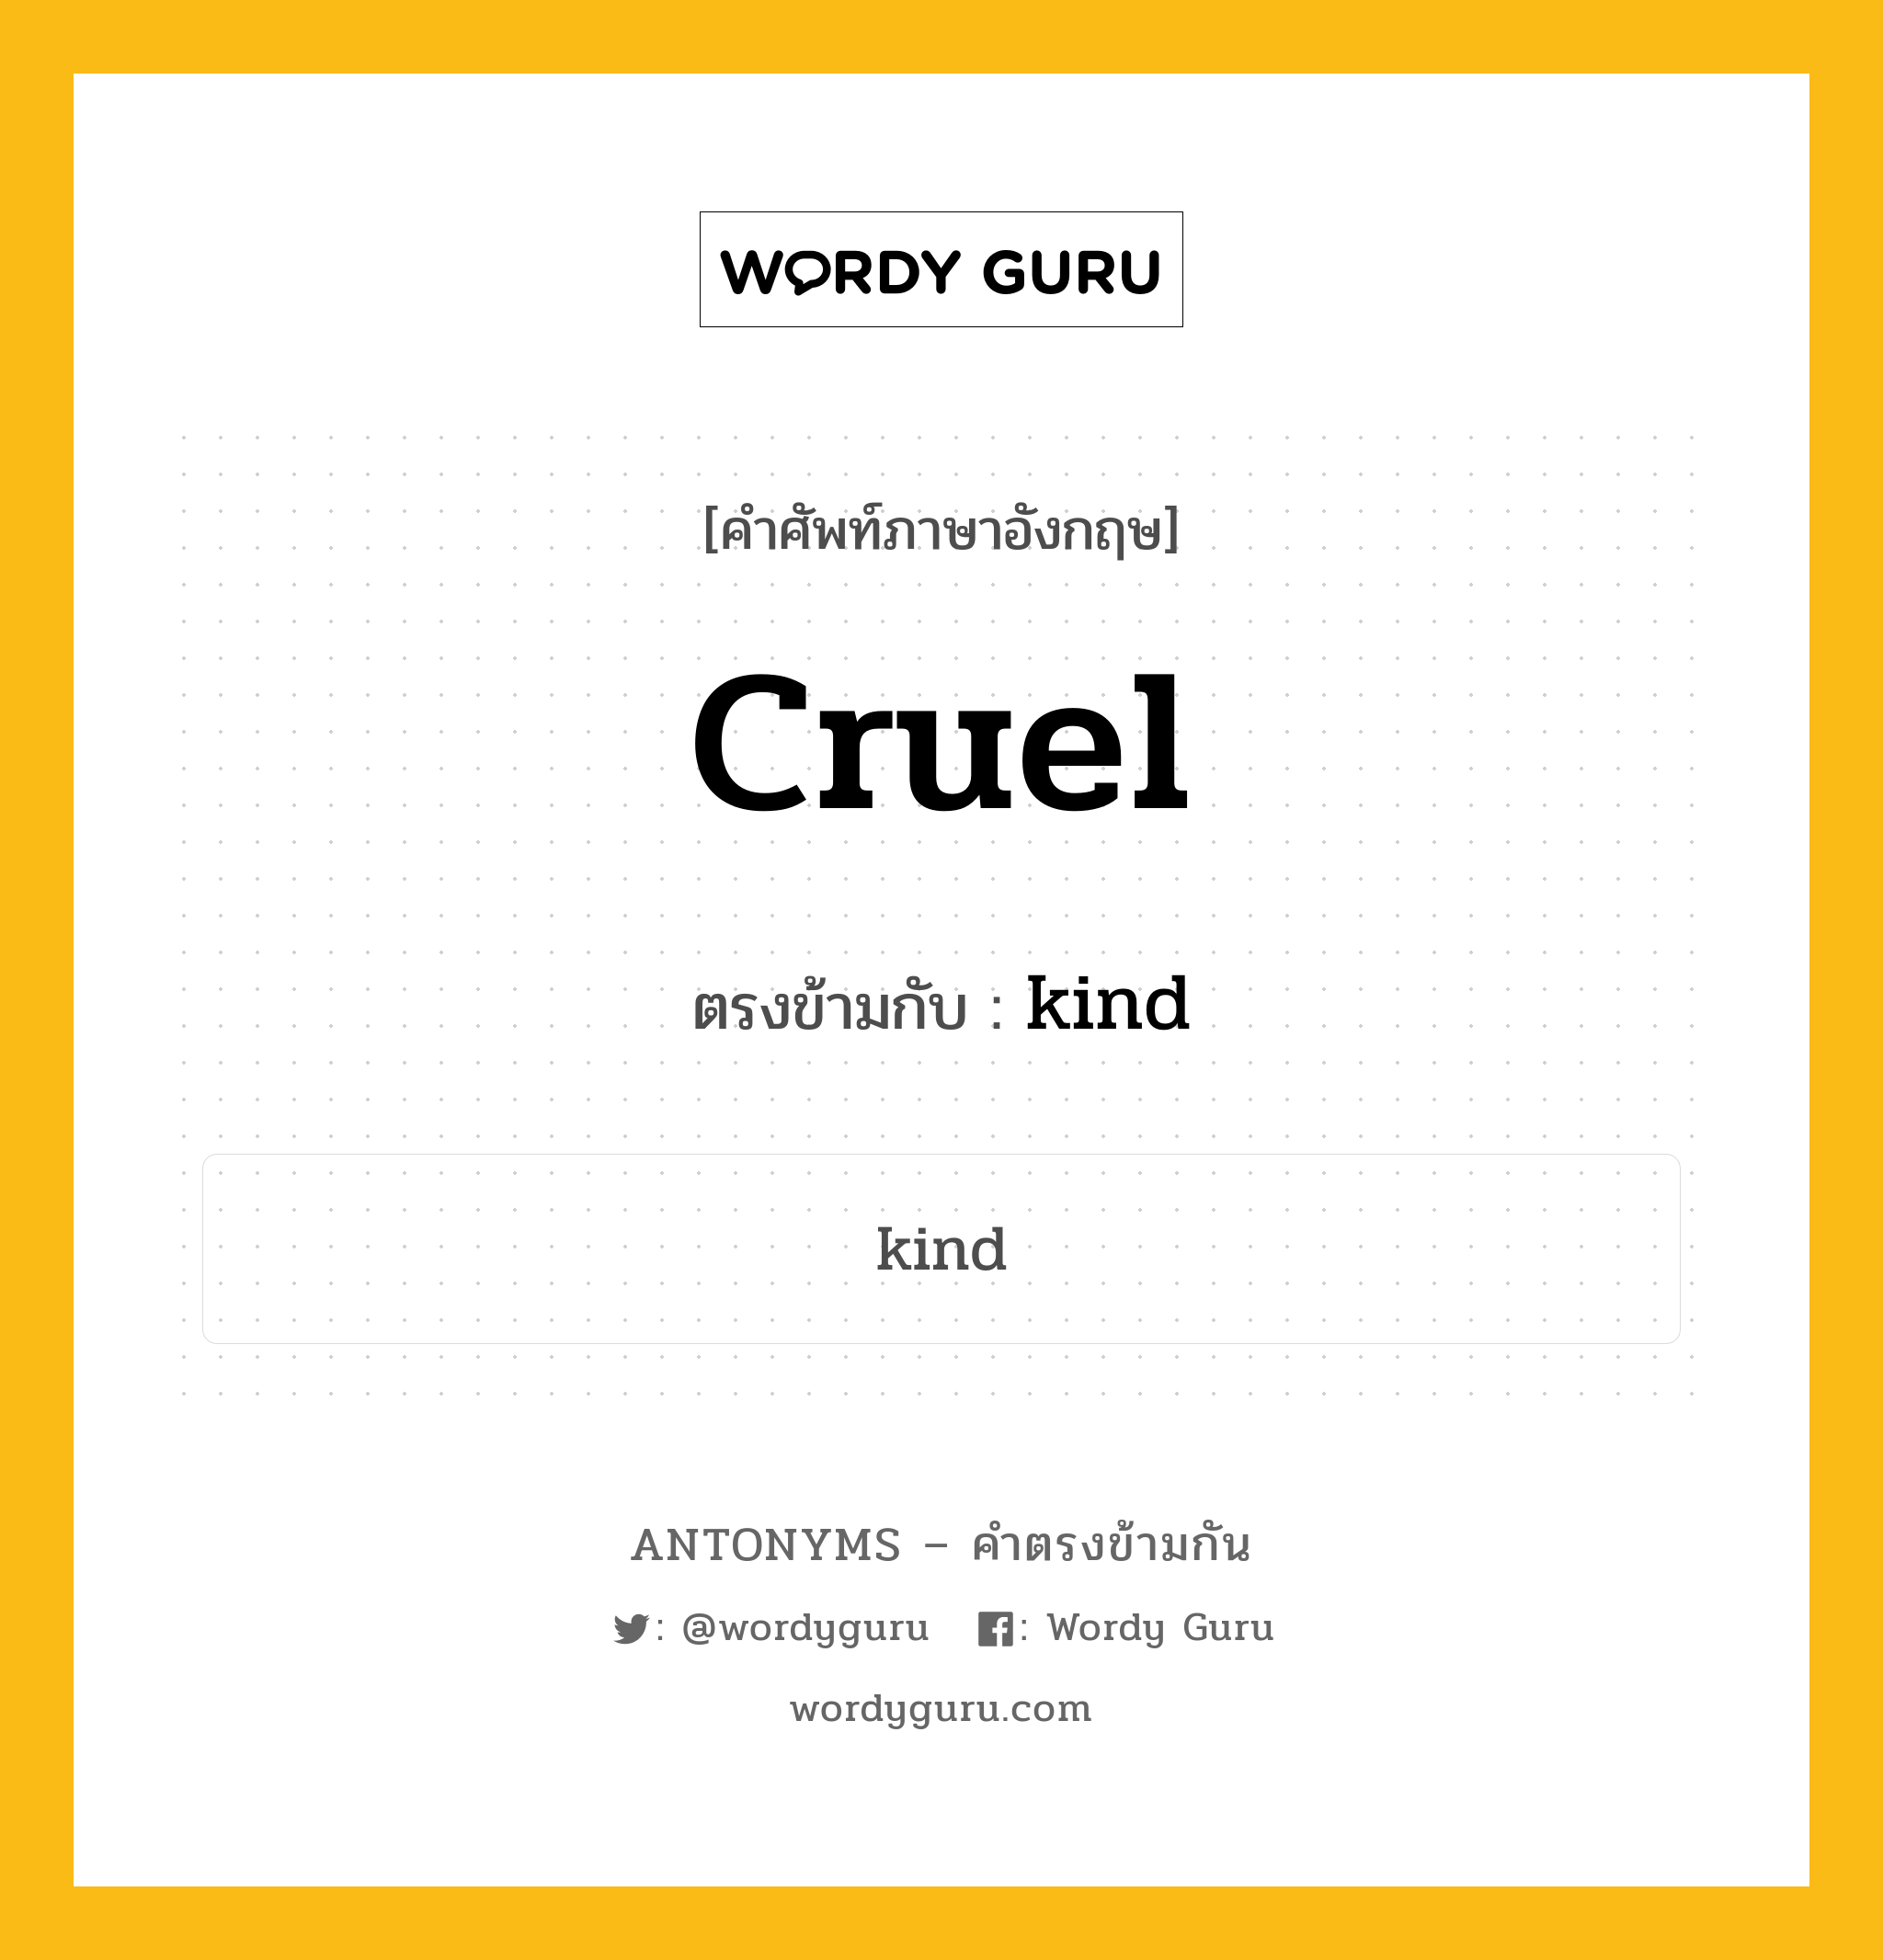 cruel เป็นคำตรงข้ามกับคำไหนบ้าง?, คำศัพท์ภาษาอังกฤษ cruel ตรงข้ามกับ kind หมวด kind